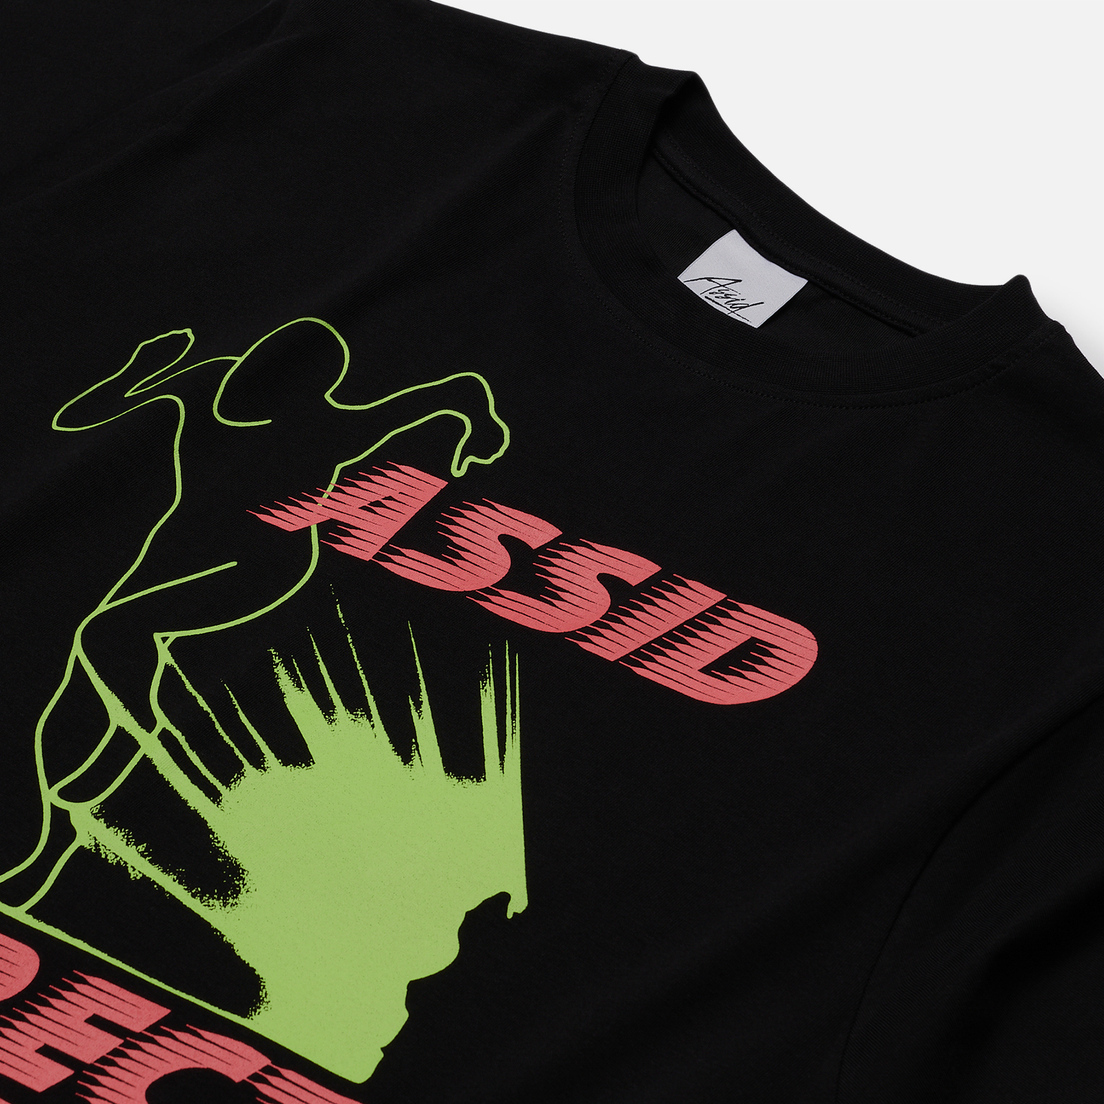 ASSID Мужская футболка Direct Sports